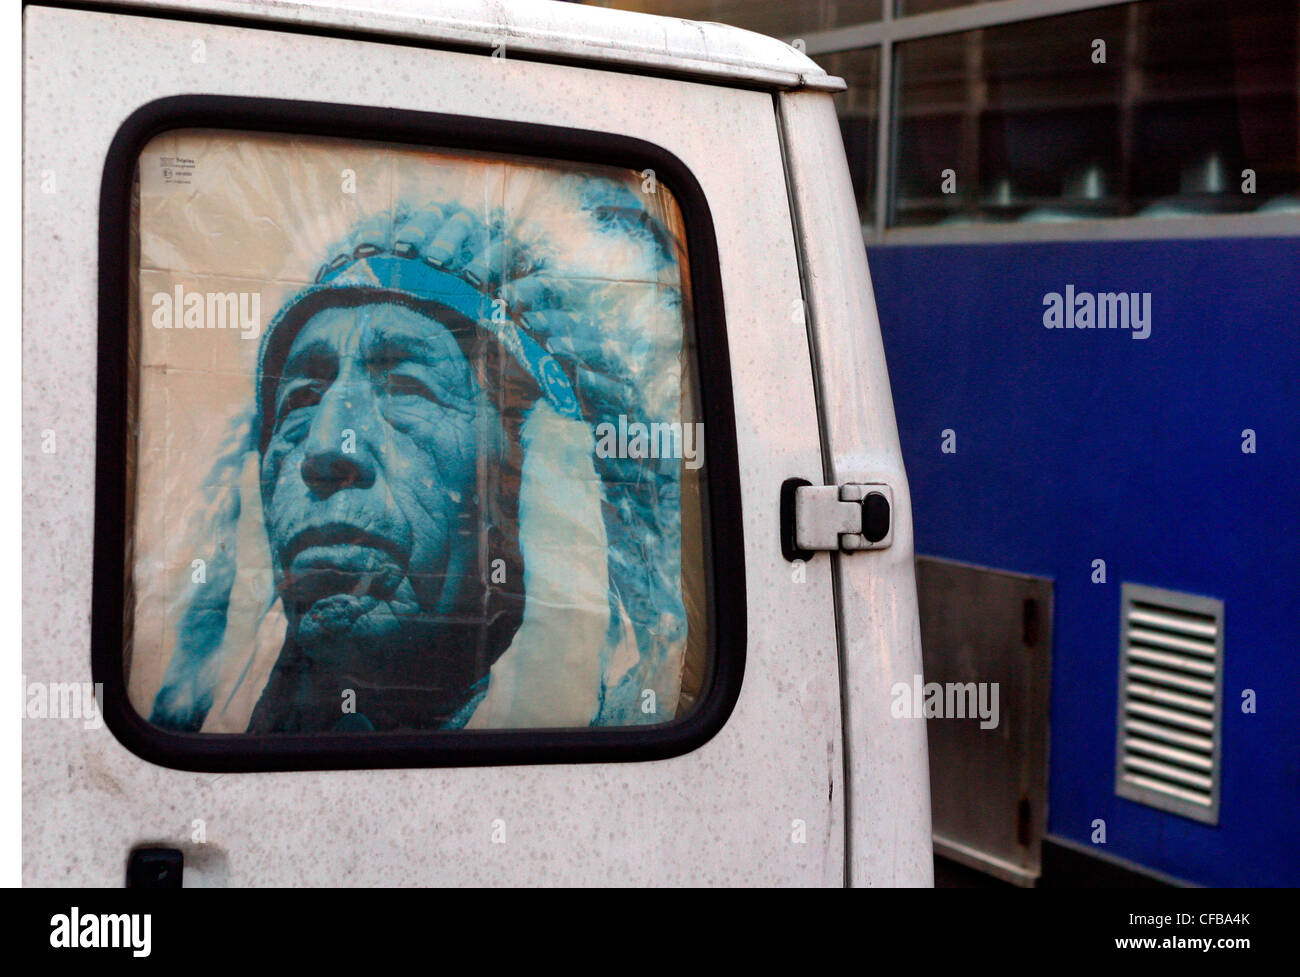 Plakat in van Fenster zeigt das Gesicht des Mannes Indianer, London, UK. Stockfoto